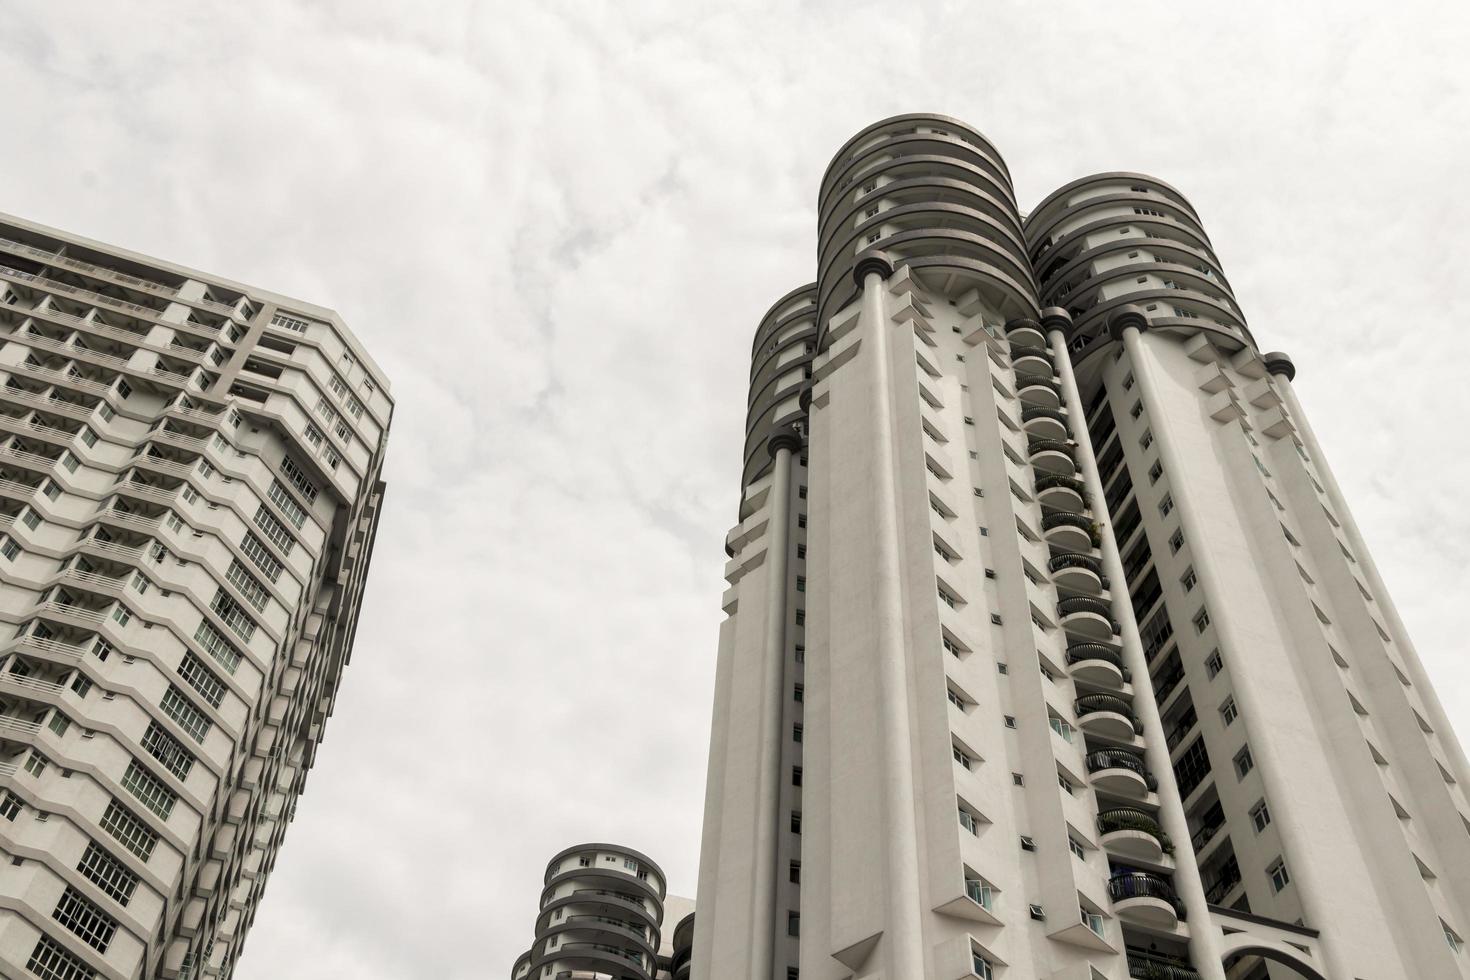 Increíble rascacielos de edificio redondo en Kuala Lumpur, Malasia foto